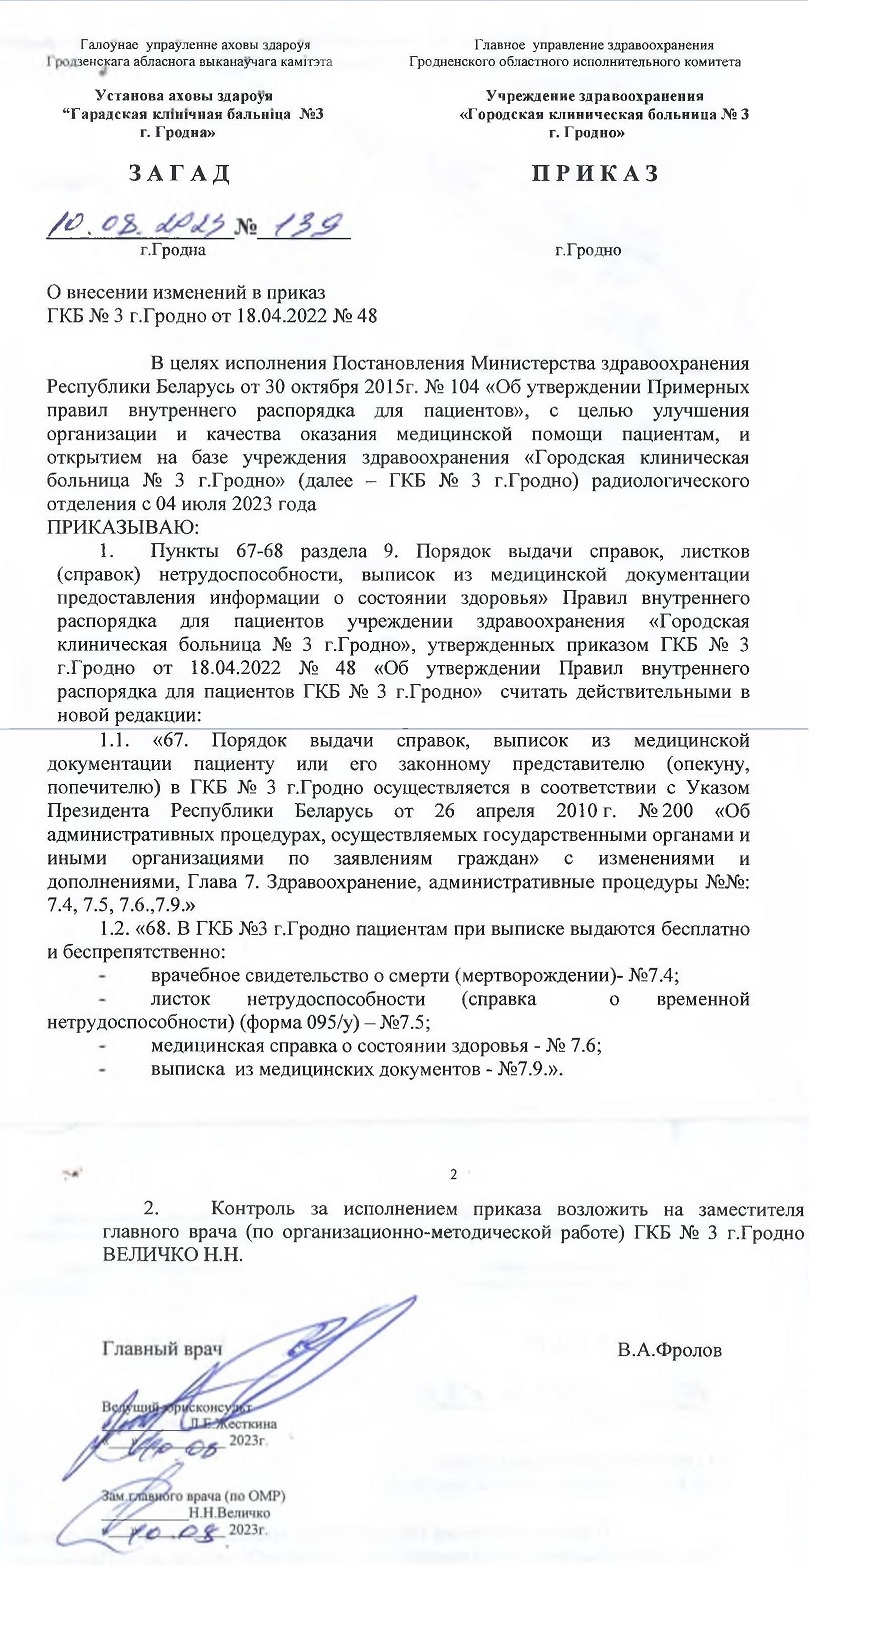 О внесении изменений в приказ ГКБ № 3 г.Гродно от 18.04.2022 № 48